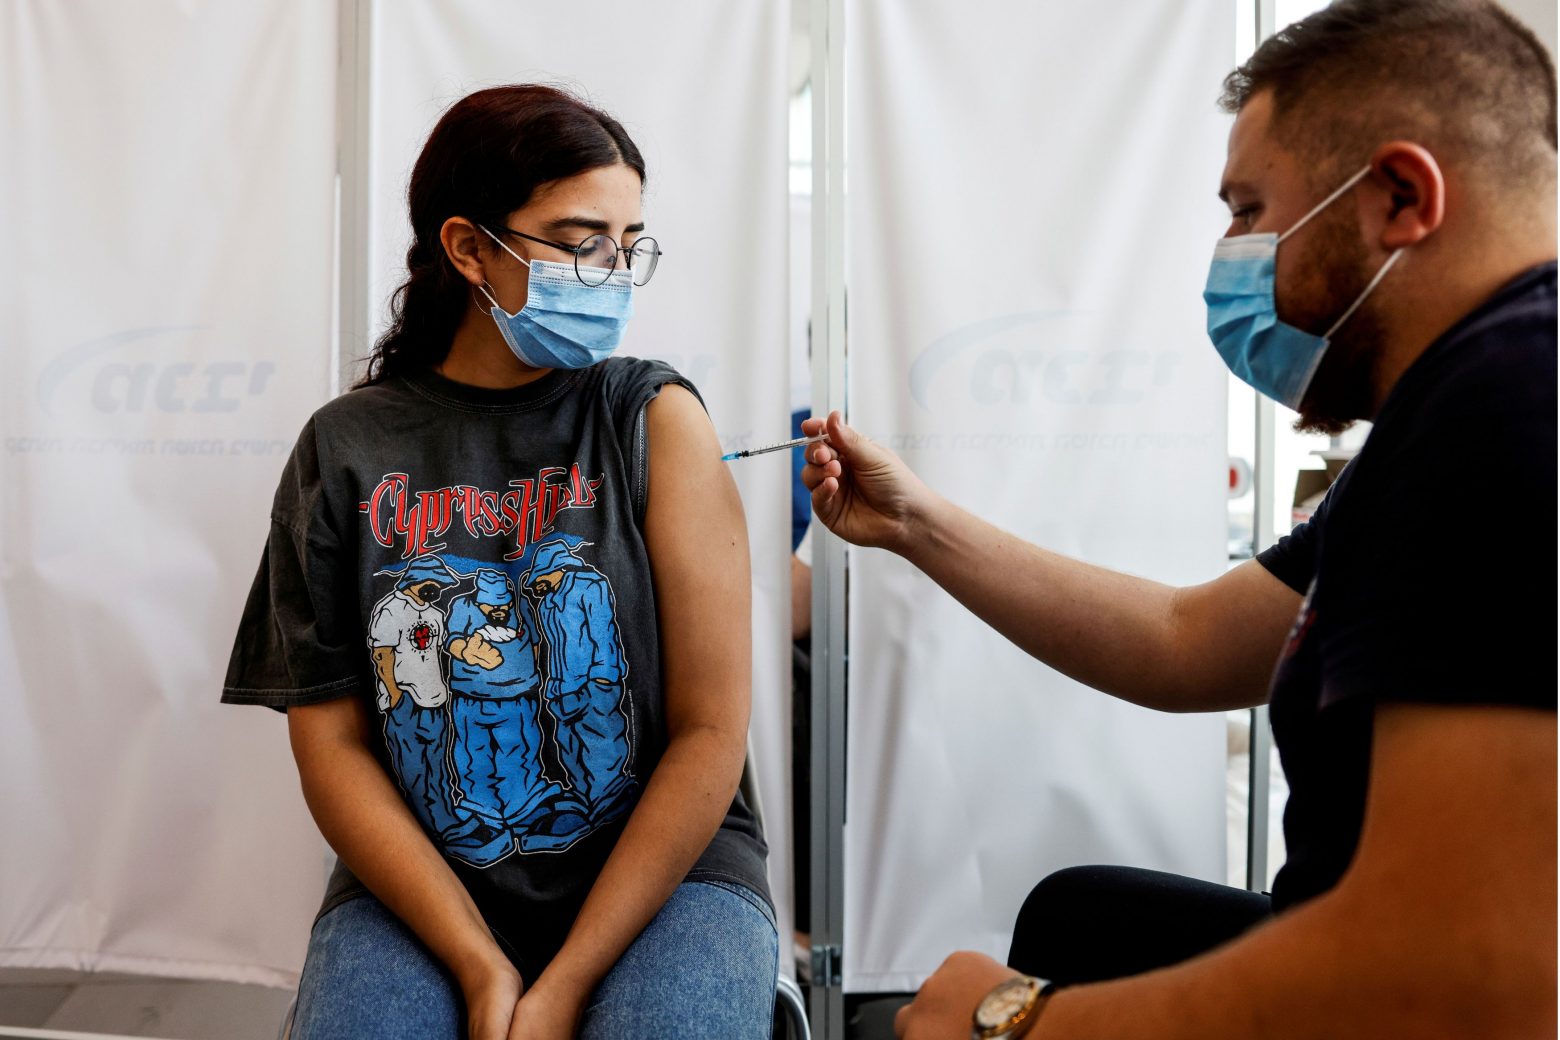 ΗΠΑ - Την ψυχική υγεία βελτιώνει ο εμβολιασμός κατά της Covid-19 υποστηρίζει νέα έρευνα